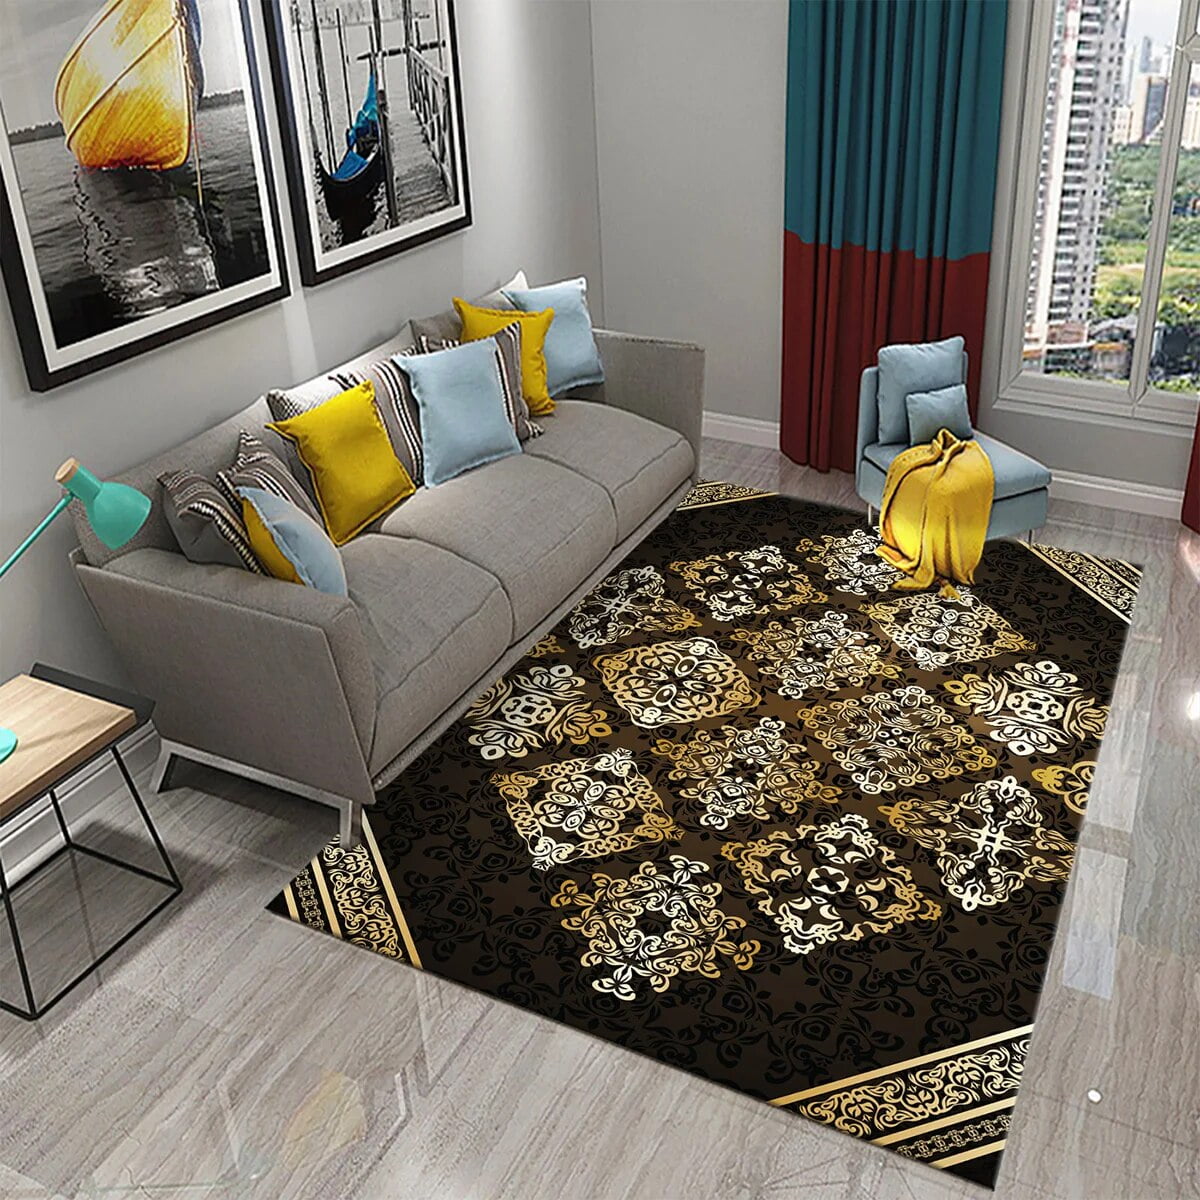 3D Black Golden Luxury Carpet for Living Room Bedroom Bedside Rugs ...